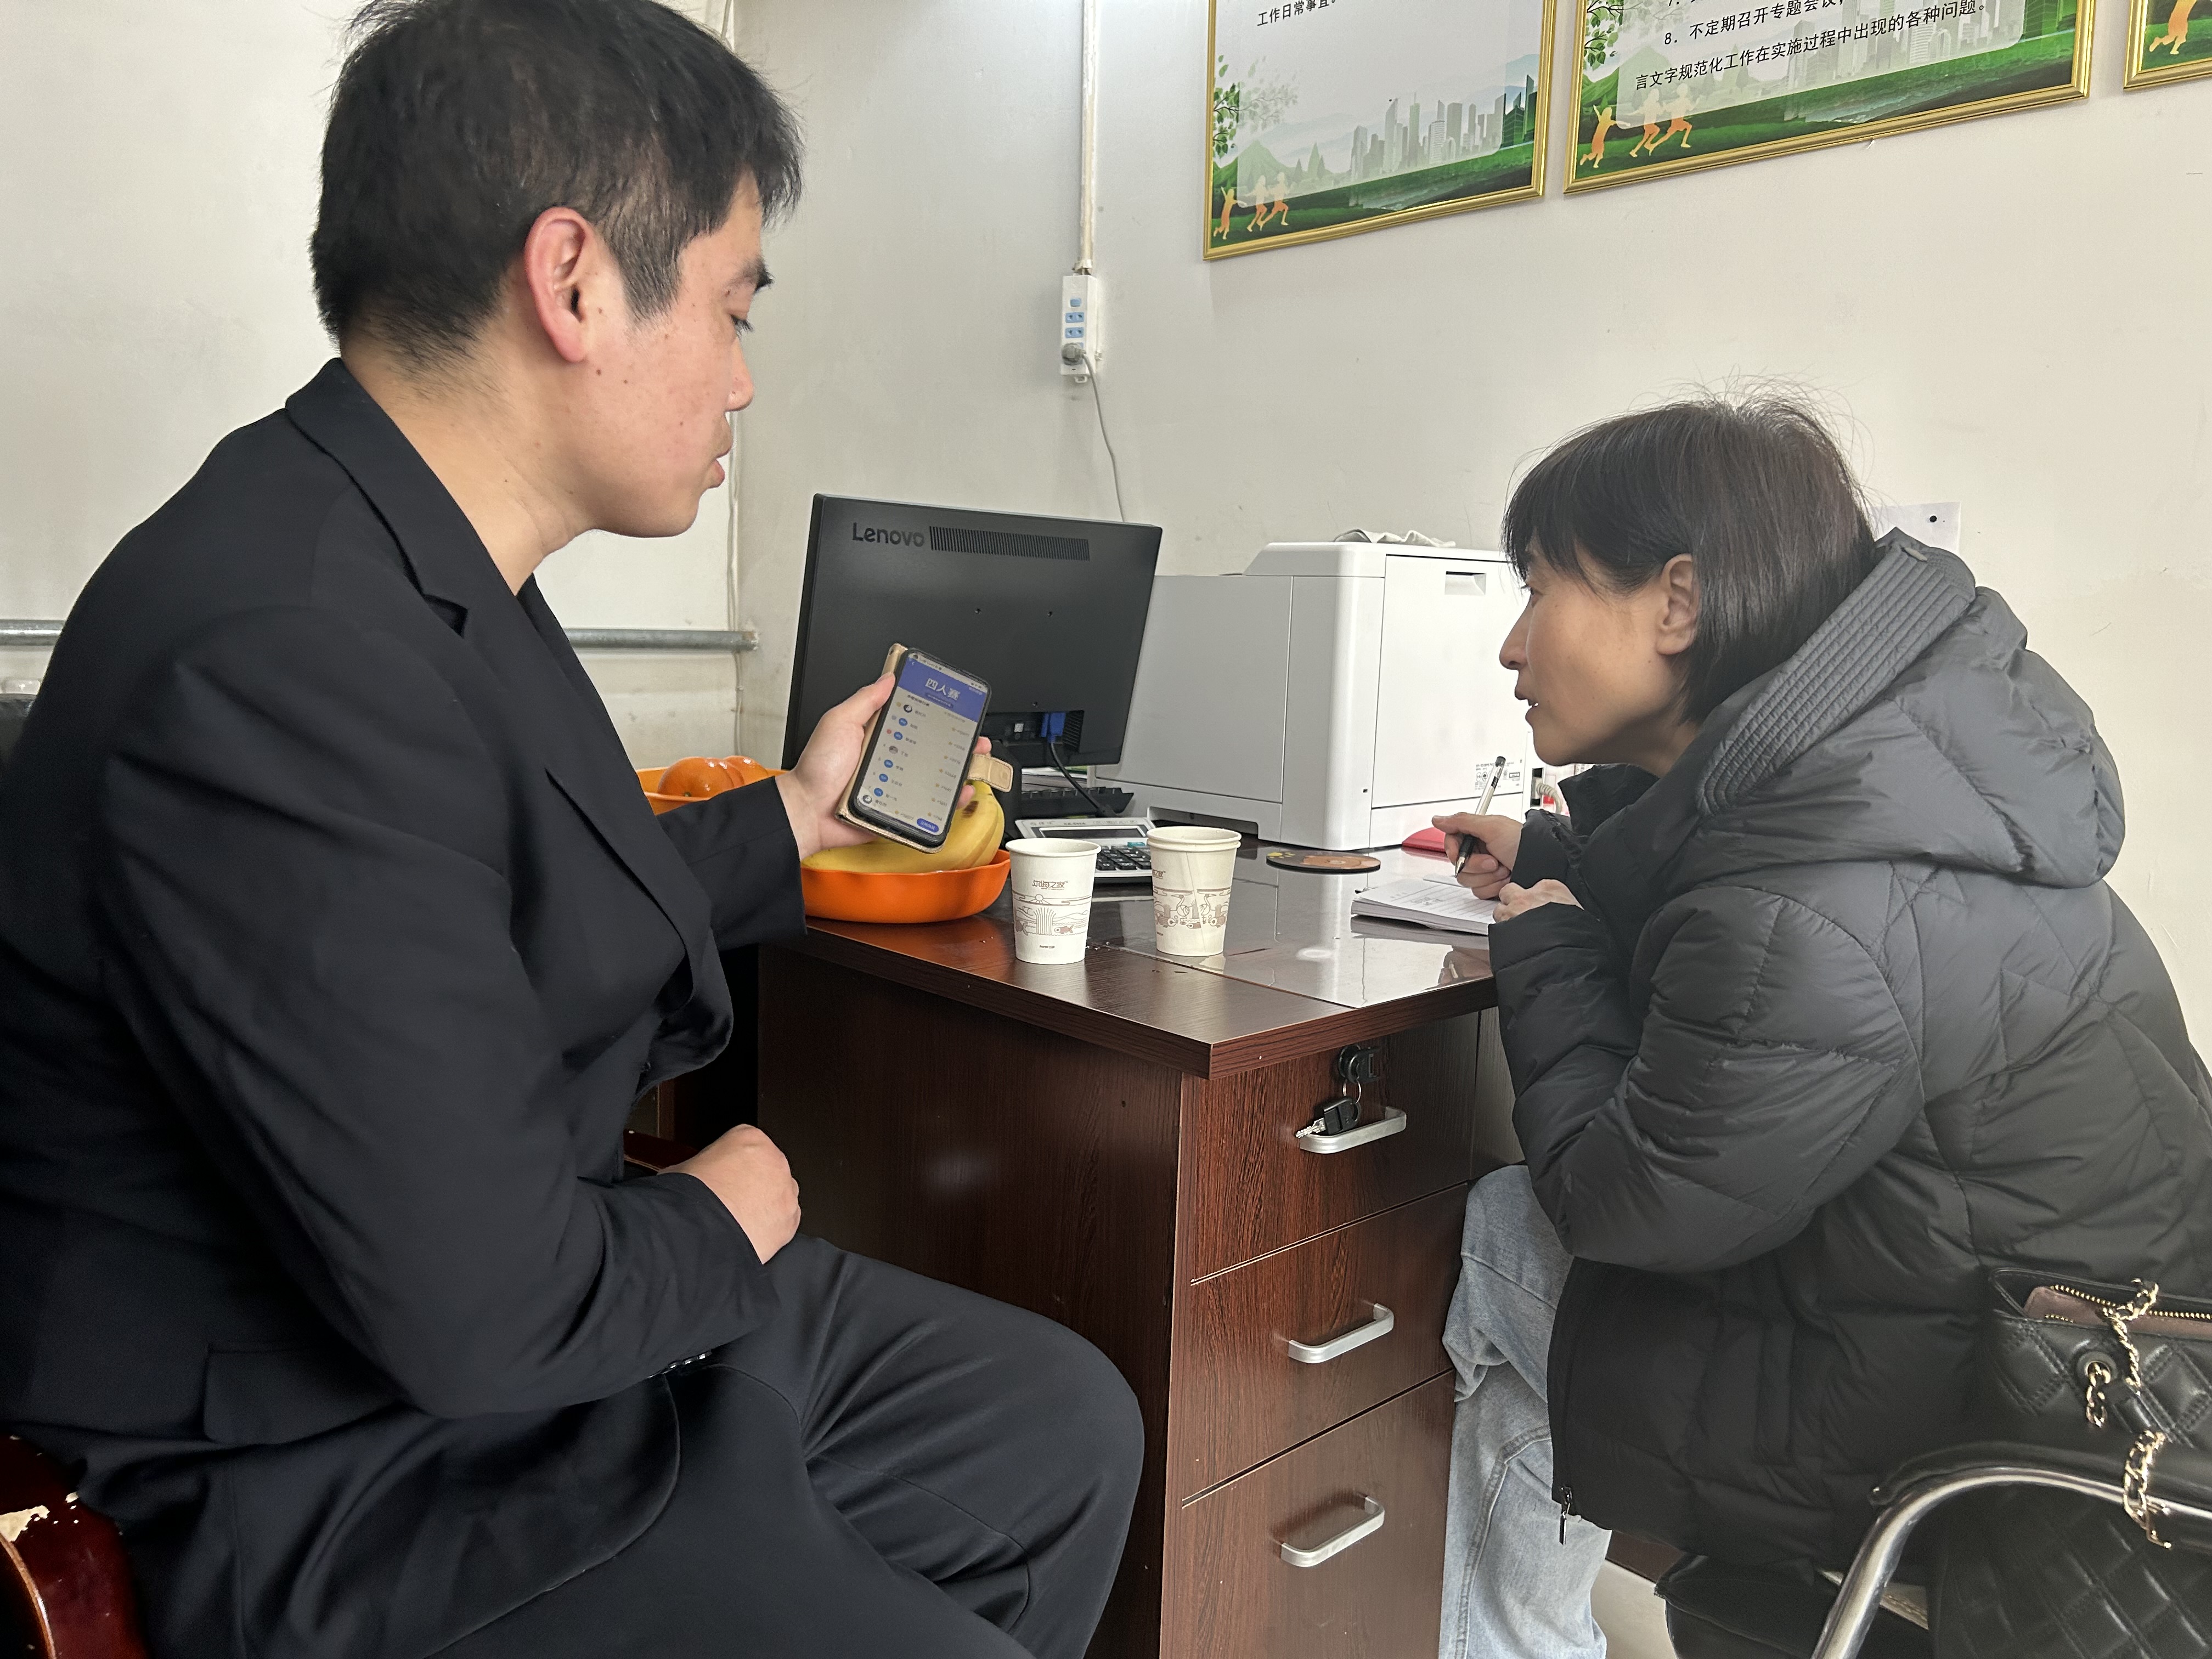 县委宣传部工作人员采访谢红杰的画面 一.JPG